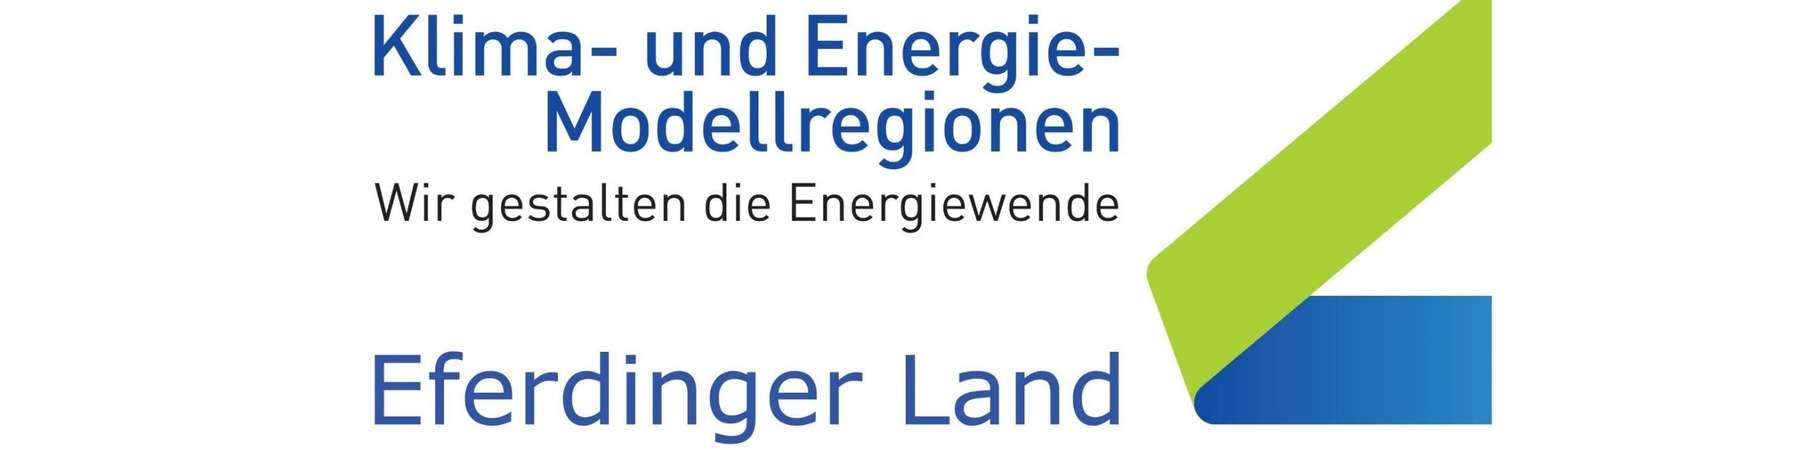 Logo Klima und Energie Modellregion Eferdinger Land.jpg